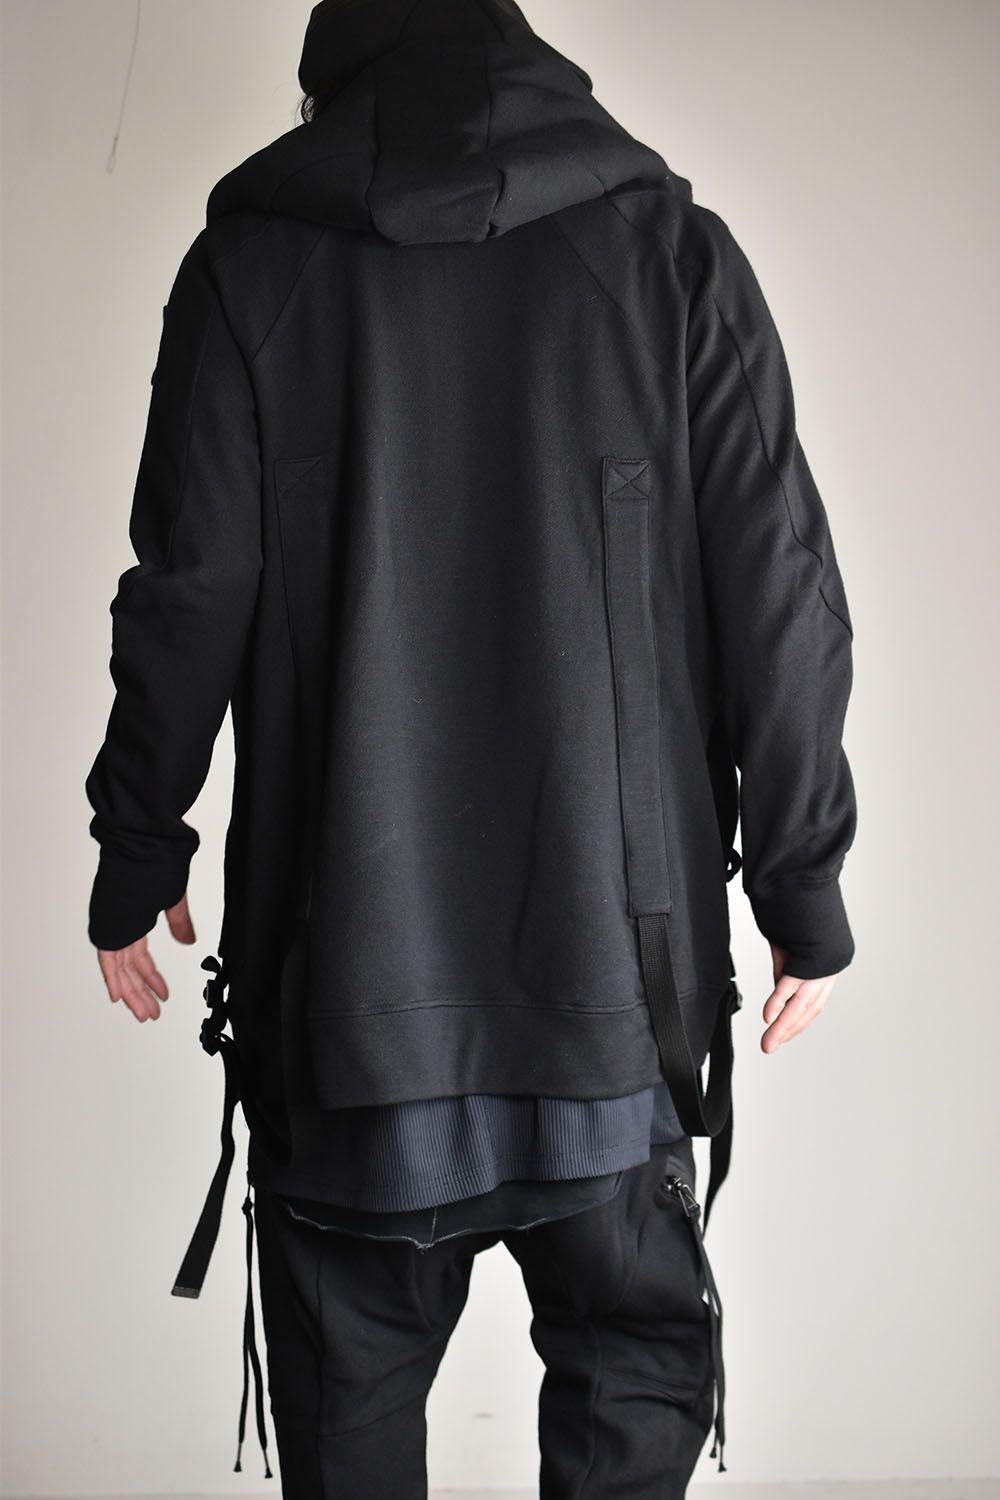 D.HYGEN - Wool Non-Ply Yarn Double Zip Suspender Hooded Jacket 